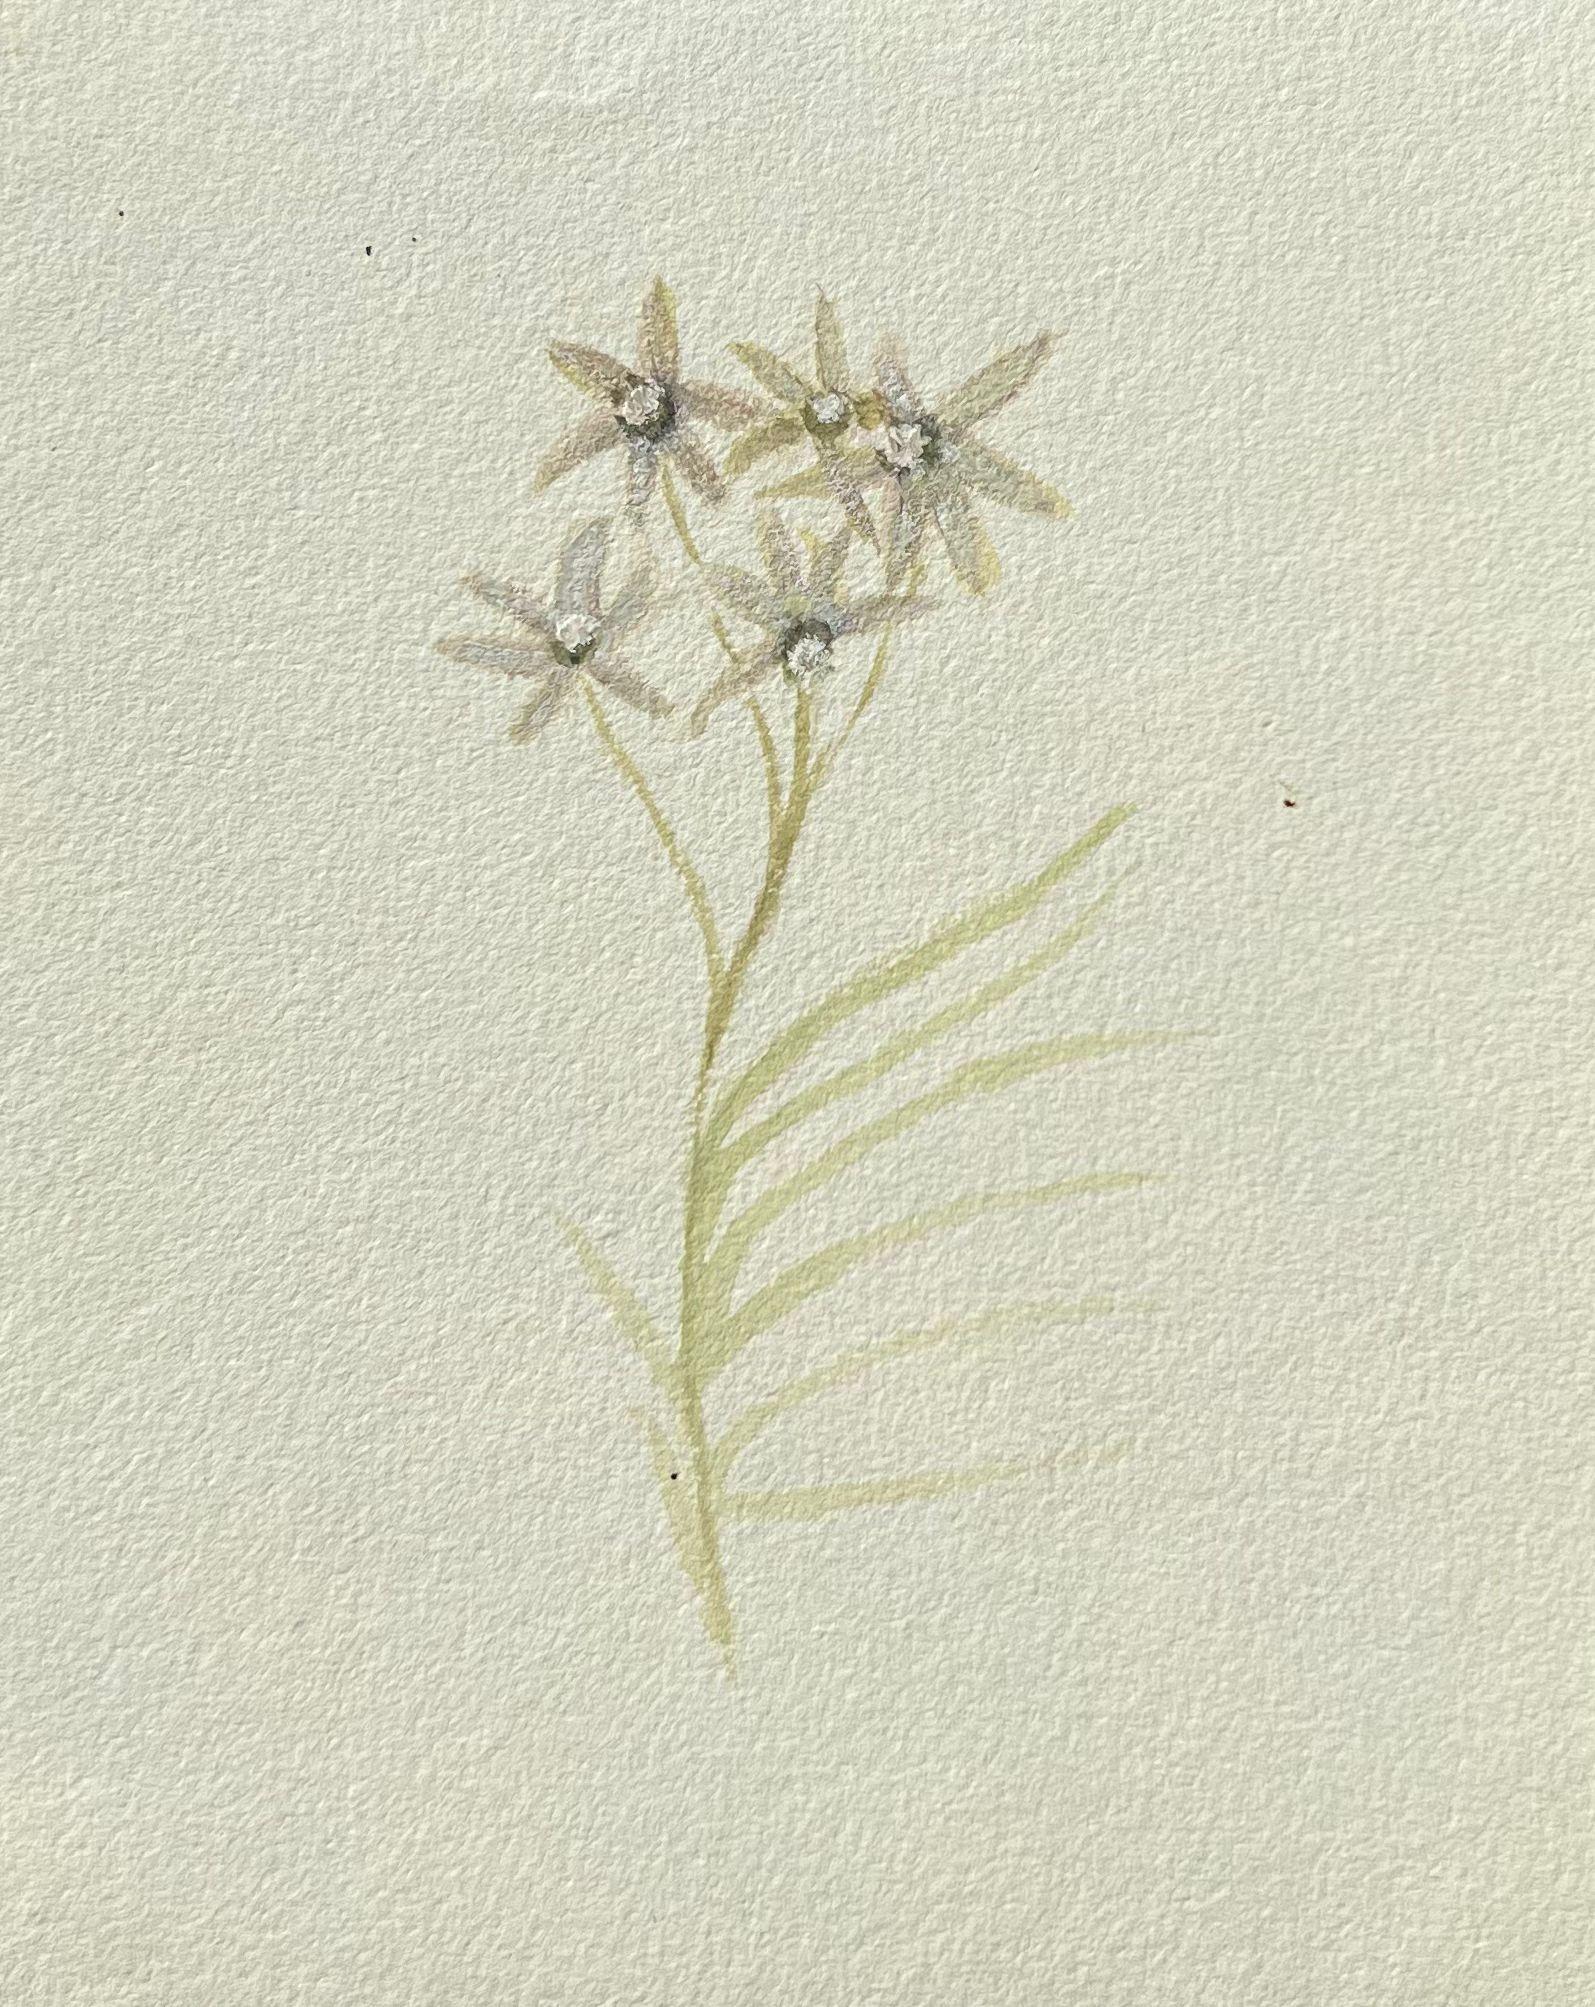 Feines antikes britisches botanisches Gemälde, weiße Centaurium-Blume, Centaurium